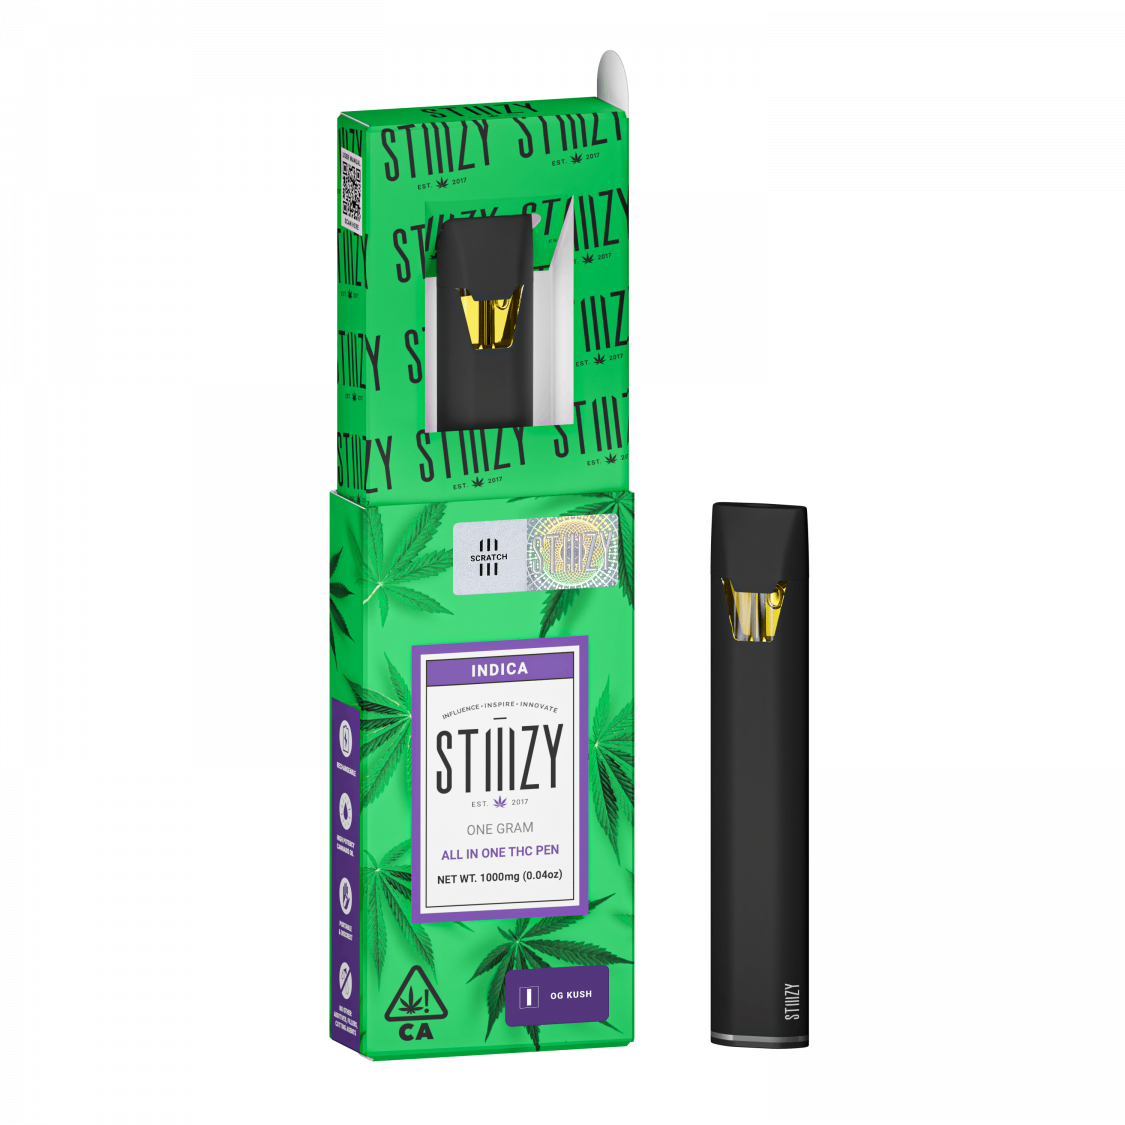 STIIIZY OG Kush All-In-One THC Pen Vaporizers Disposable